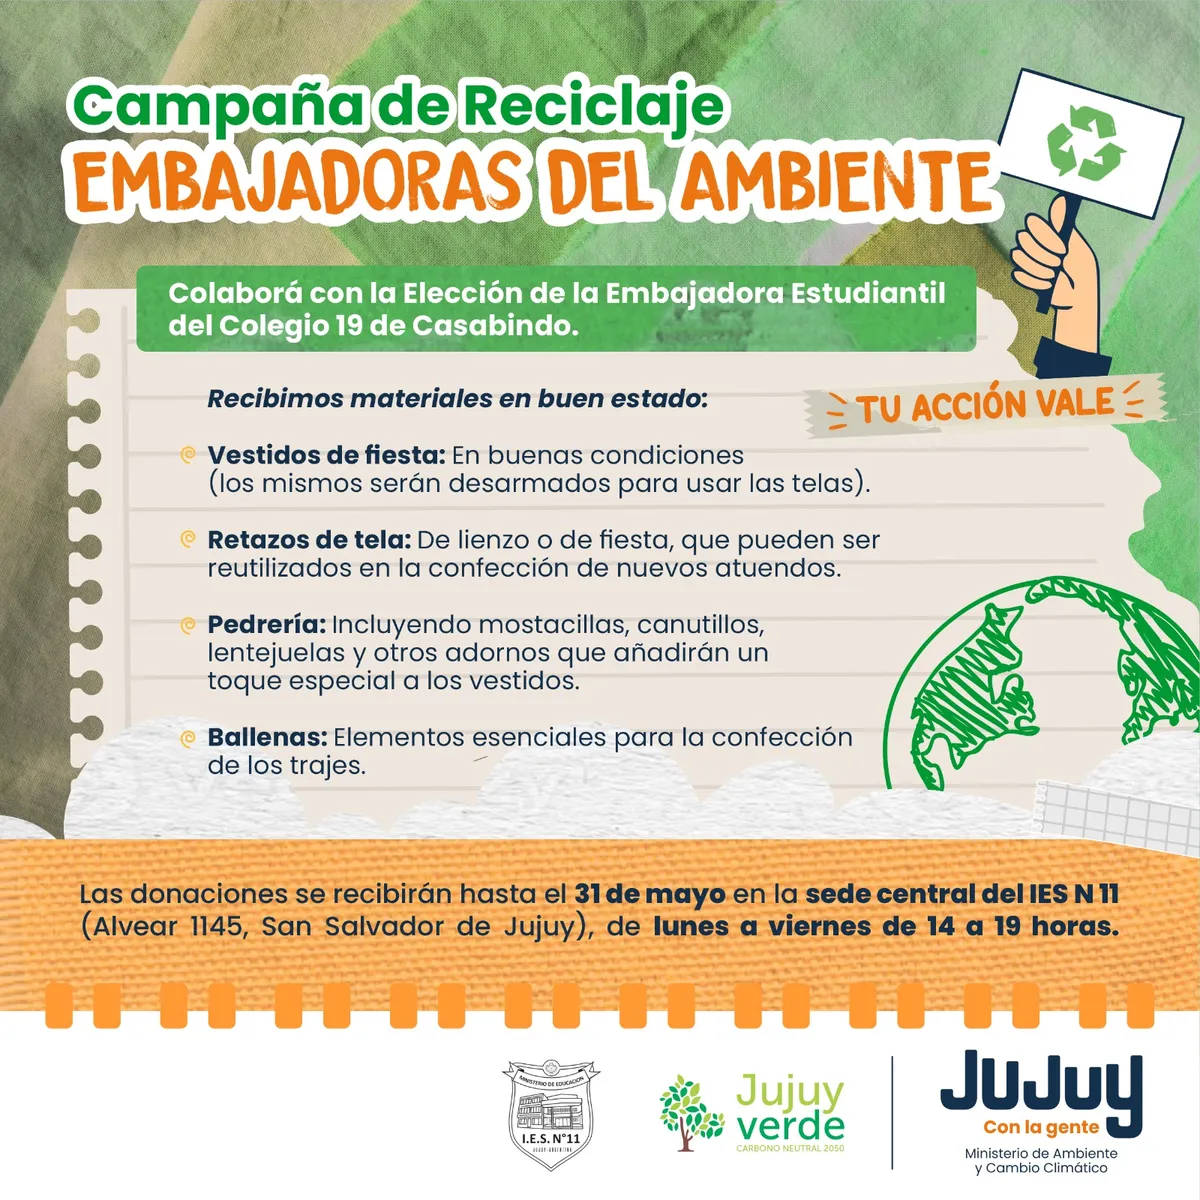 «Embajadoras del Ambiente», una campaña de reciclaje para participar de la FNE